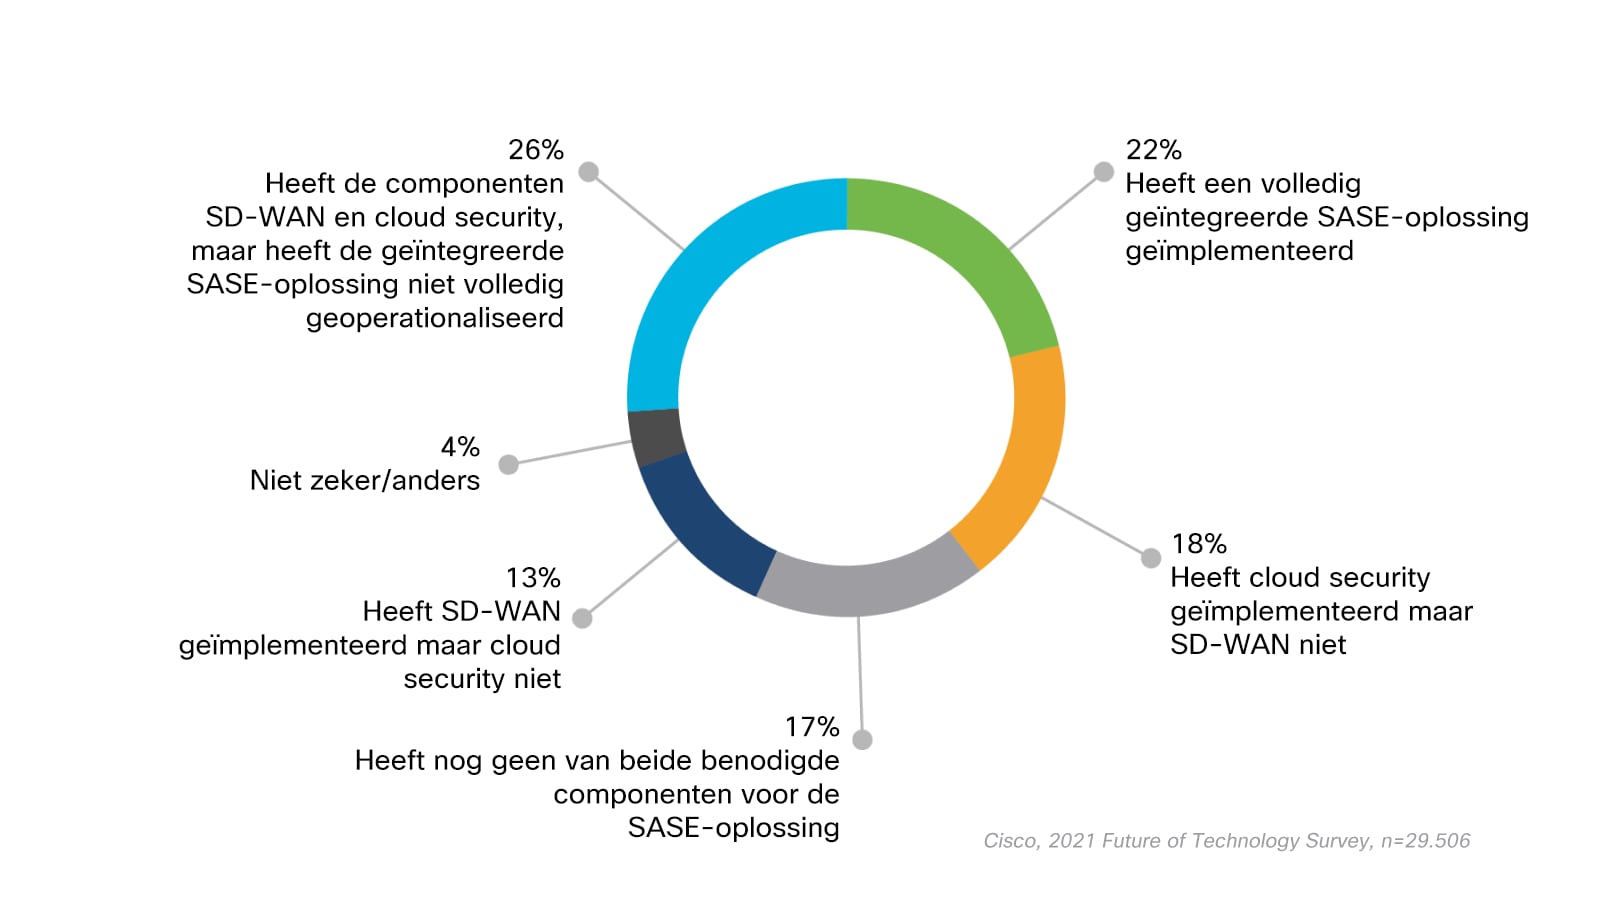 Grafiek met het percentage respondenten in diverse fasen van het SASE-traject. 26% heeft zowel cloud security als SD-WAN componenten maar heeft de geïntegreerde SASE-oplossing niet volledig geoperationaliseerd, 22% heeft de geïmplementeerde SASE-oplossing volledig geïntegreerd, 18% heeft cloud security geïmplementeerd maar SD-WAN niet, 17% heeft nog geen van beide benodigde componenten voor de SASE-oplossing, 13% heeft SD-WAN geïmplementeerd maar cloud security niet, en 4% selecteerde Niet zeker/anders.